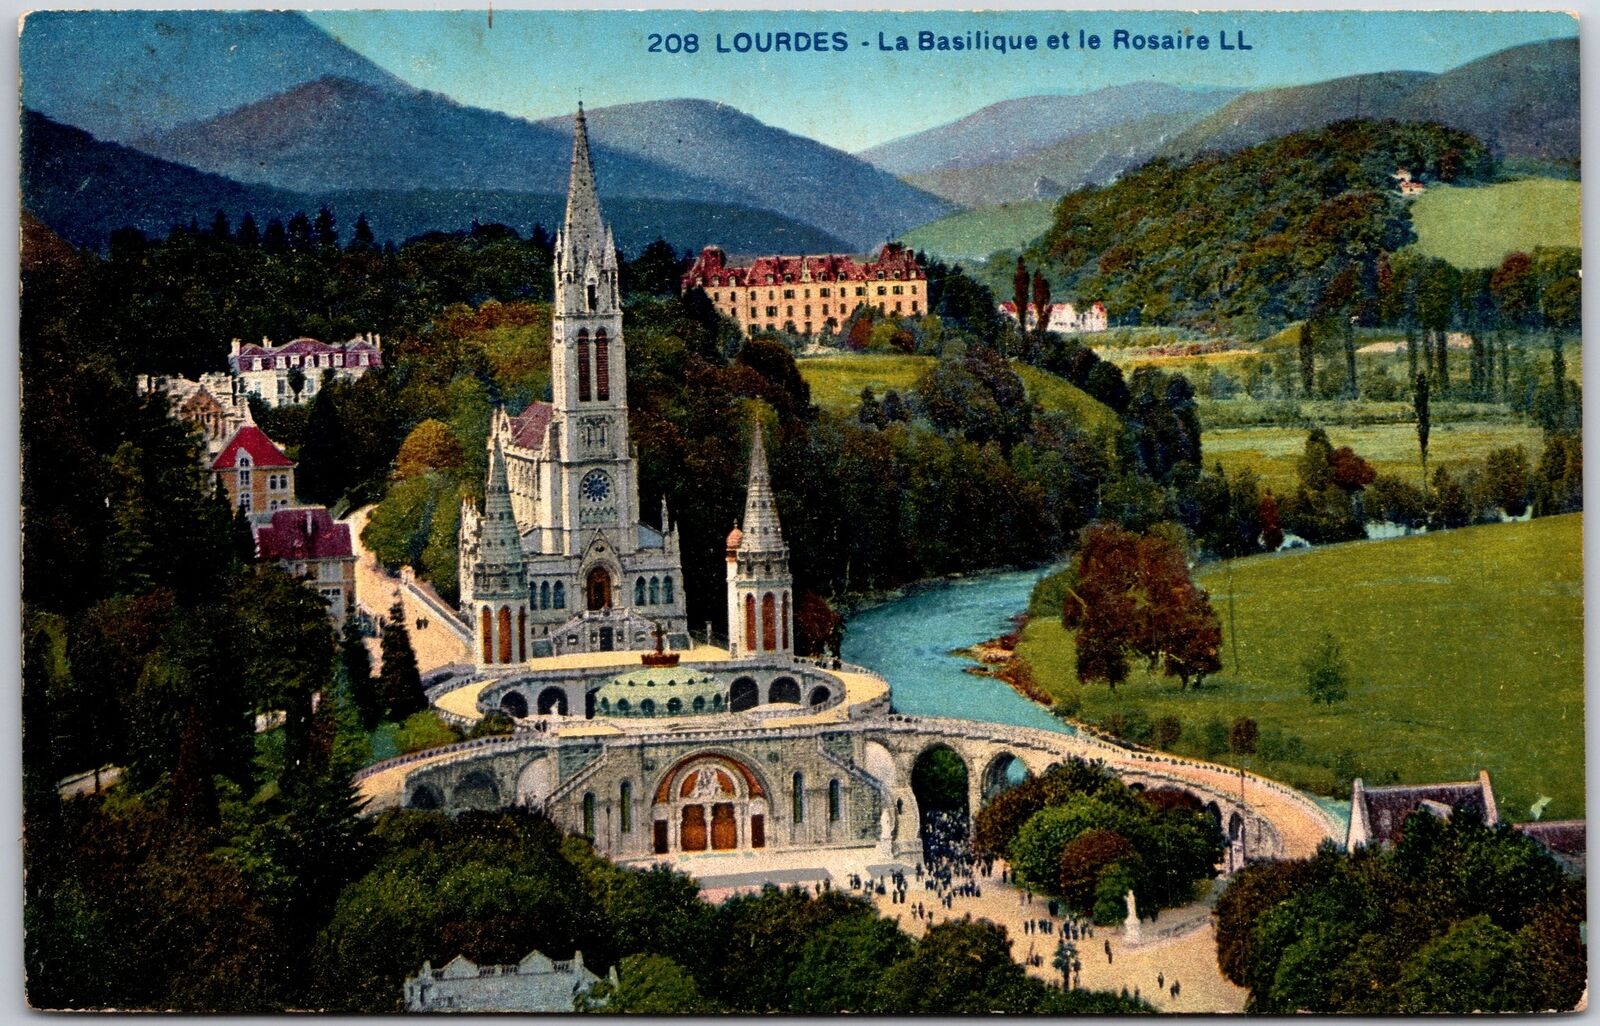 La Basilique et le Rosaire Lourdes France Landscaped Grounds Mountain Postcard